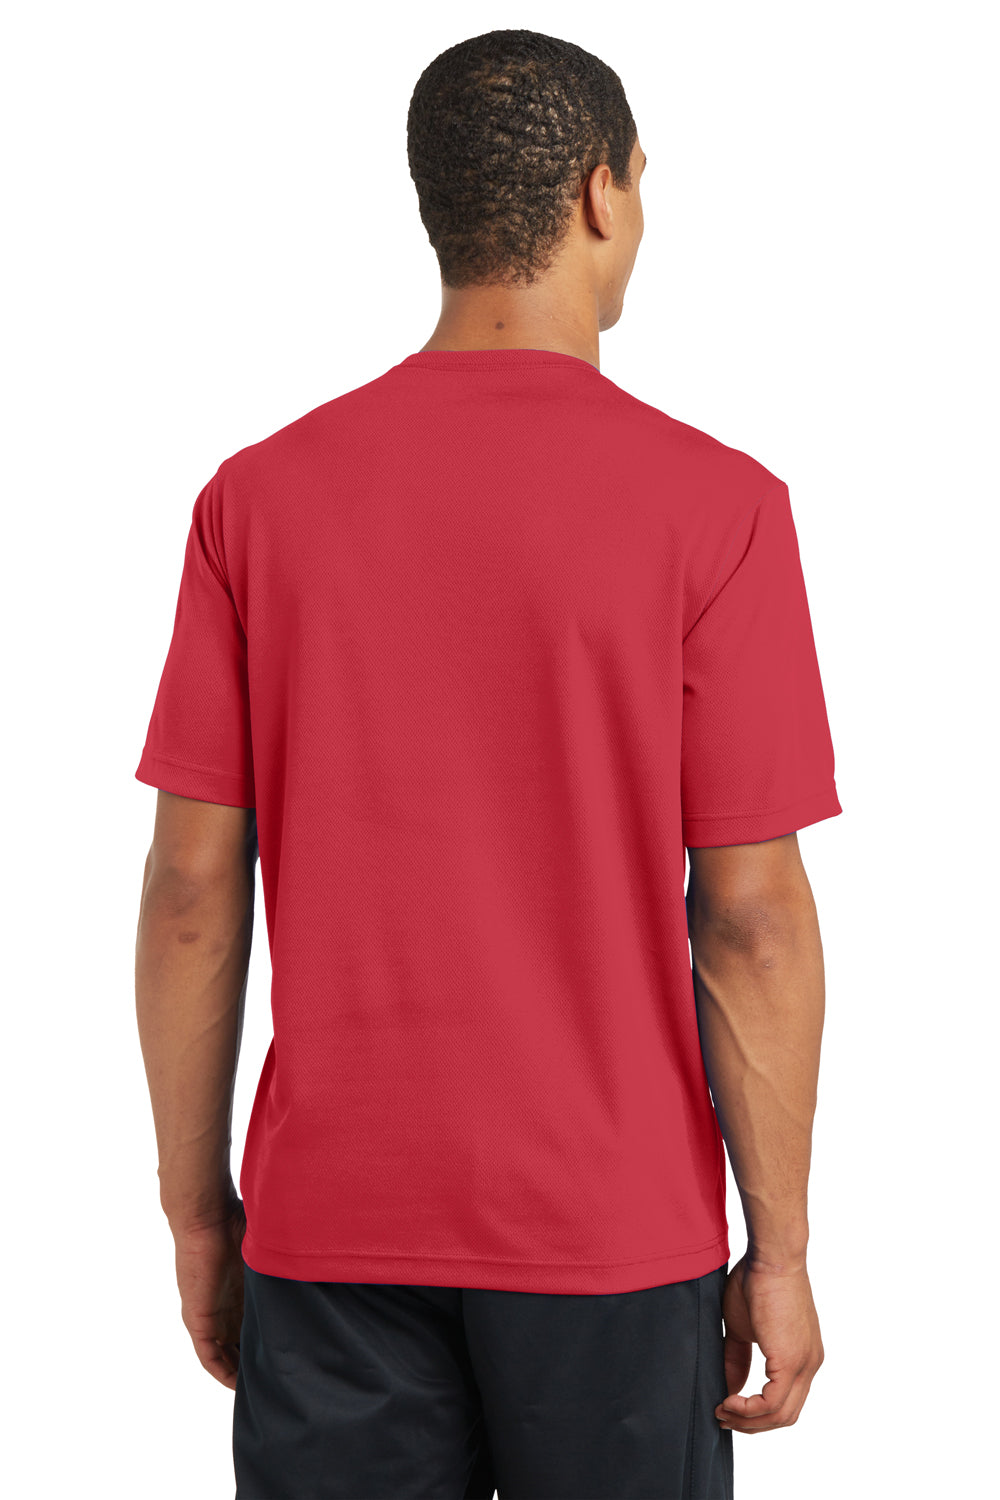 Sport-Tek ST340 Mens RacerMesh Moisture Wicking Short Sleeve Crewneck T-Shirt Red Back